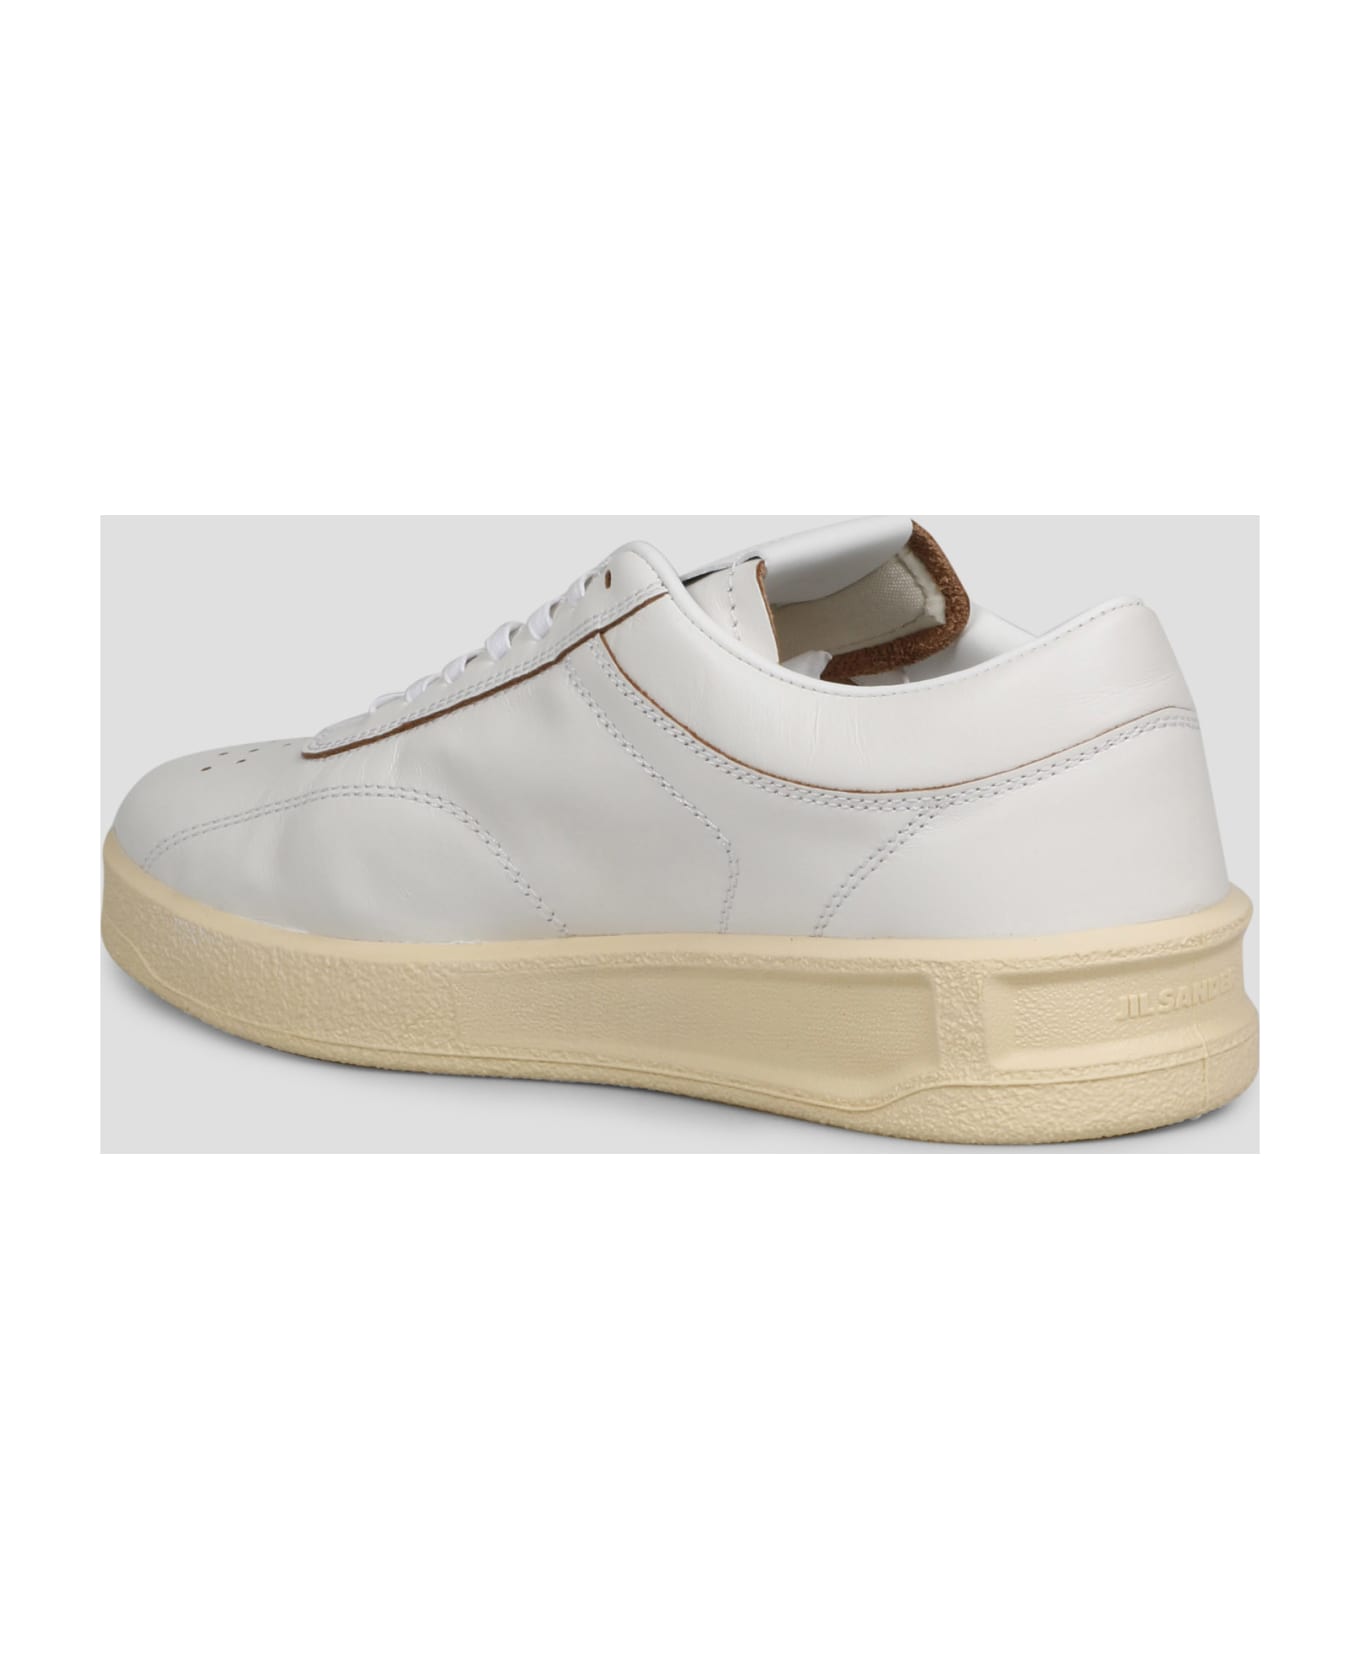 Jil Sander Low Top Sneakers - White